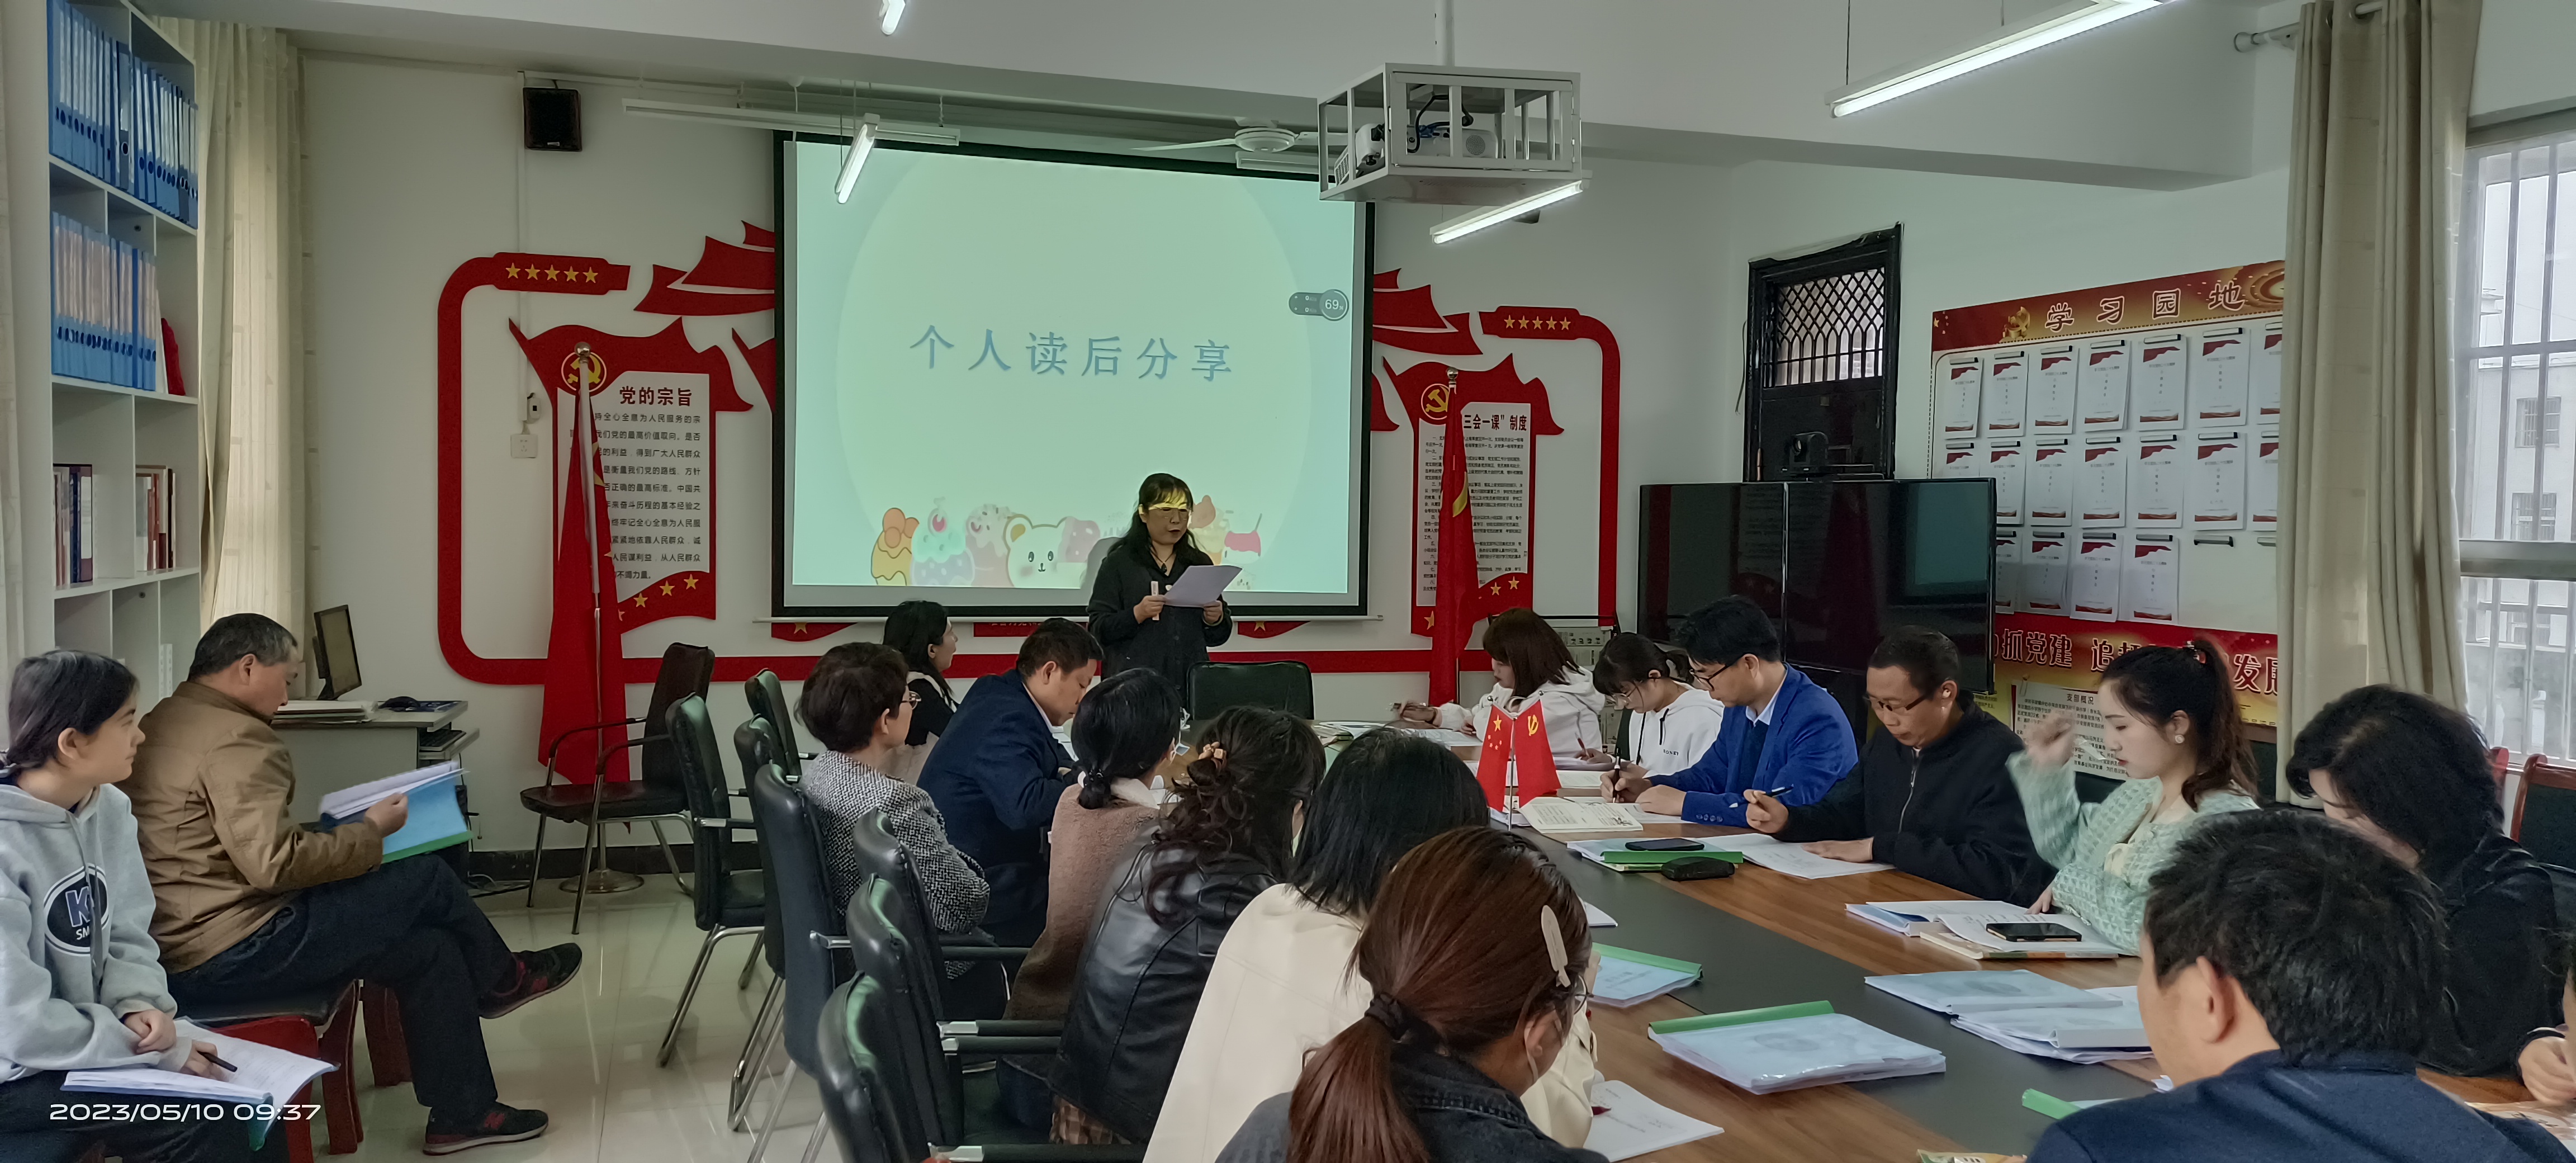 汉阴县平梁镇中心小学开展教师读书分享活动